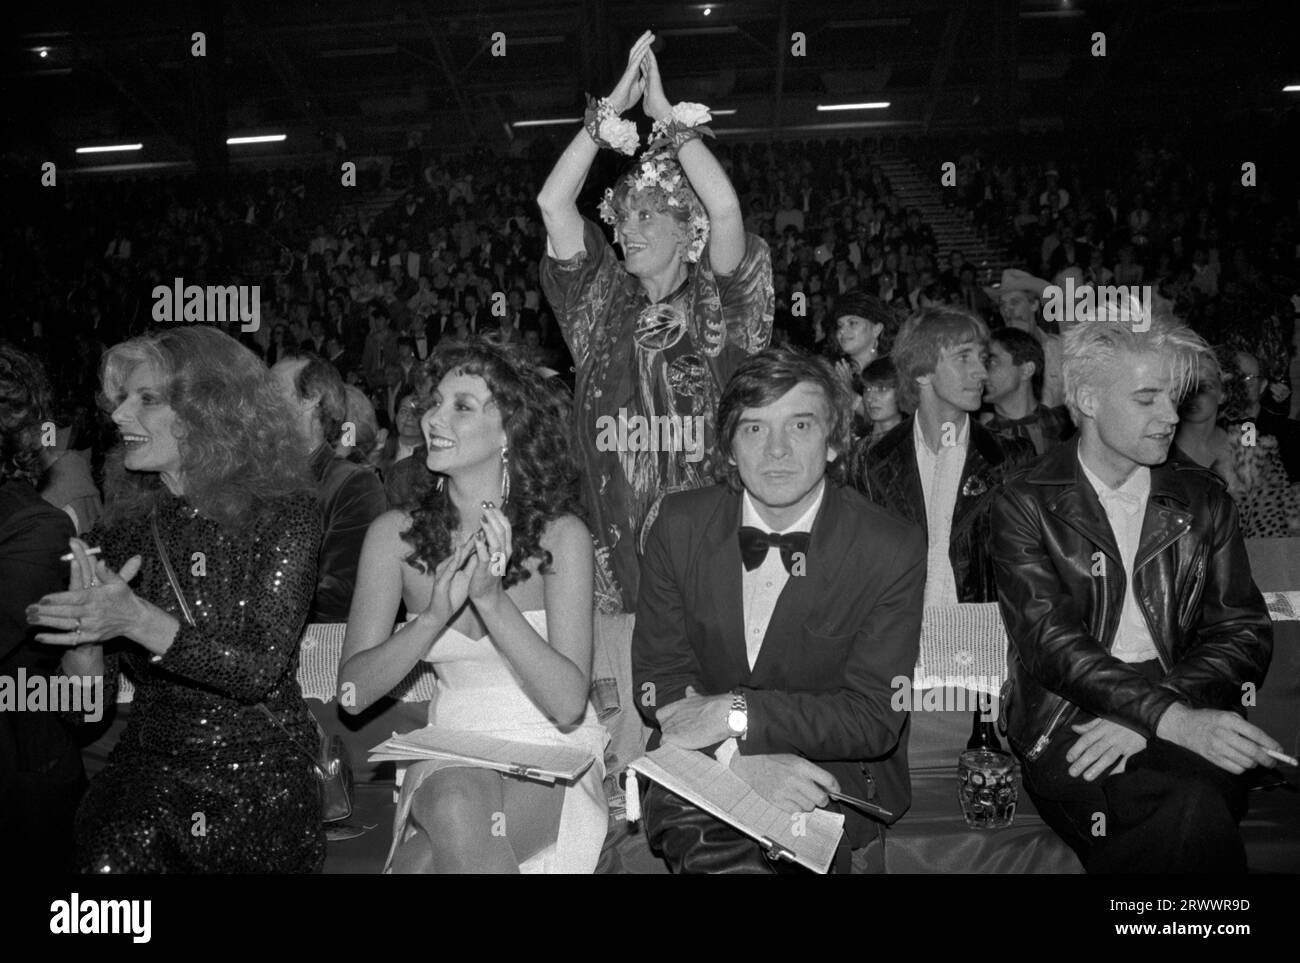 David Bailey, Marie Helvin, Rula Lenska drei Juroren beim Alternative Miss World Competition 1980s UK. Nick Rhodes von Duran Duran Duran (rechts neben der DB) West London England 1981 Großbritannien HOMER SYKES Stockfoto